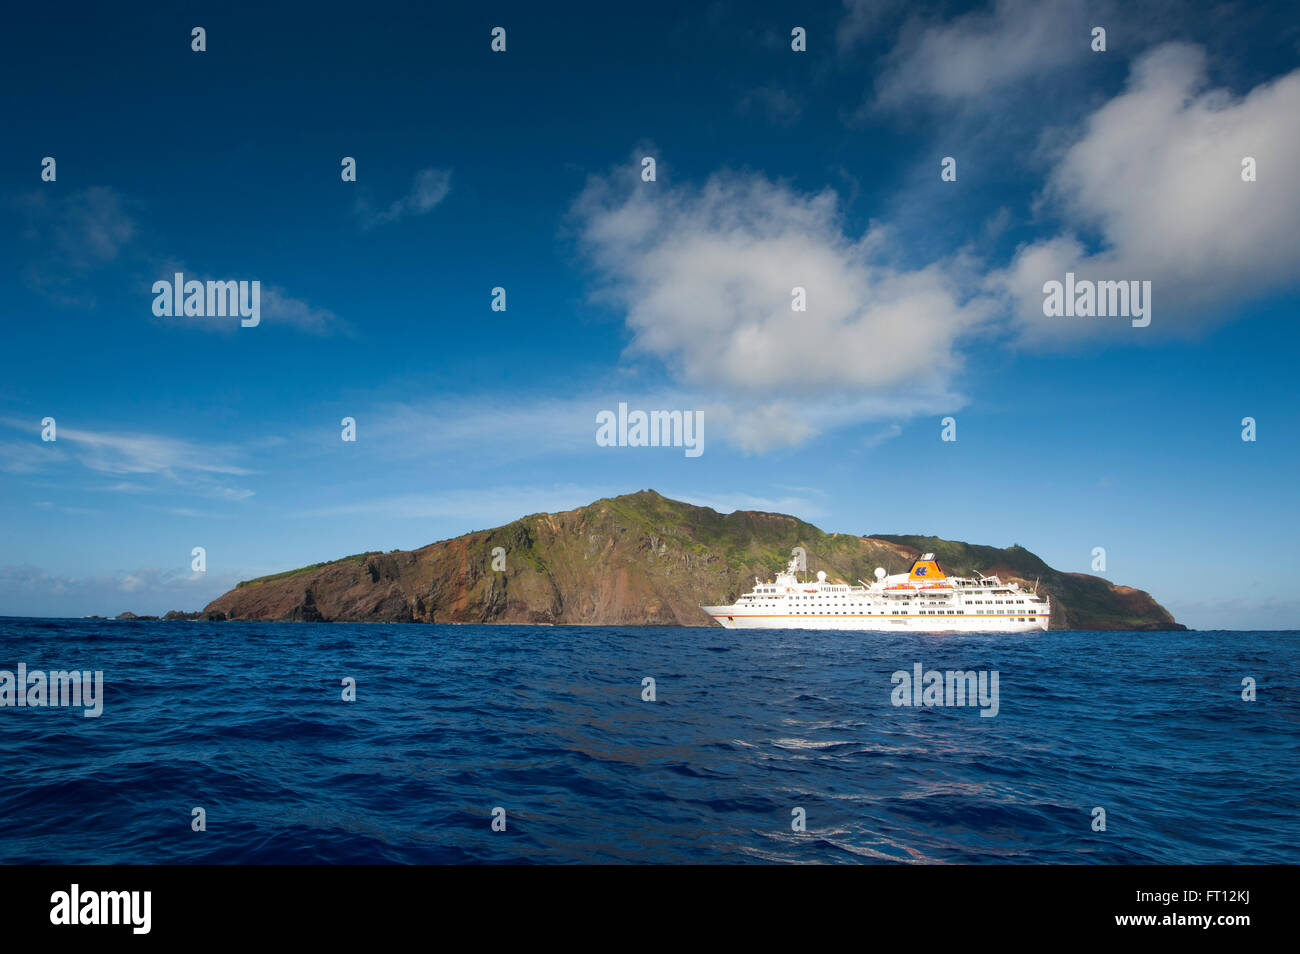 Expedición barco crucero MS Hanseatic Hapag-Lloyd cruceros en el ancla, Pitcairn, Grupo de Islas Pitcairn, Territorio Británico de Ultramar, Pacífico Sur Foto de stock